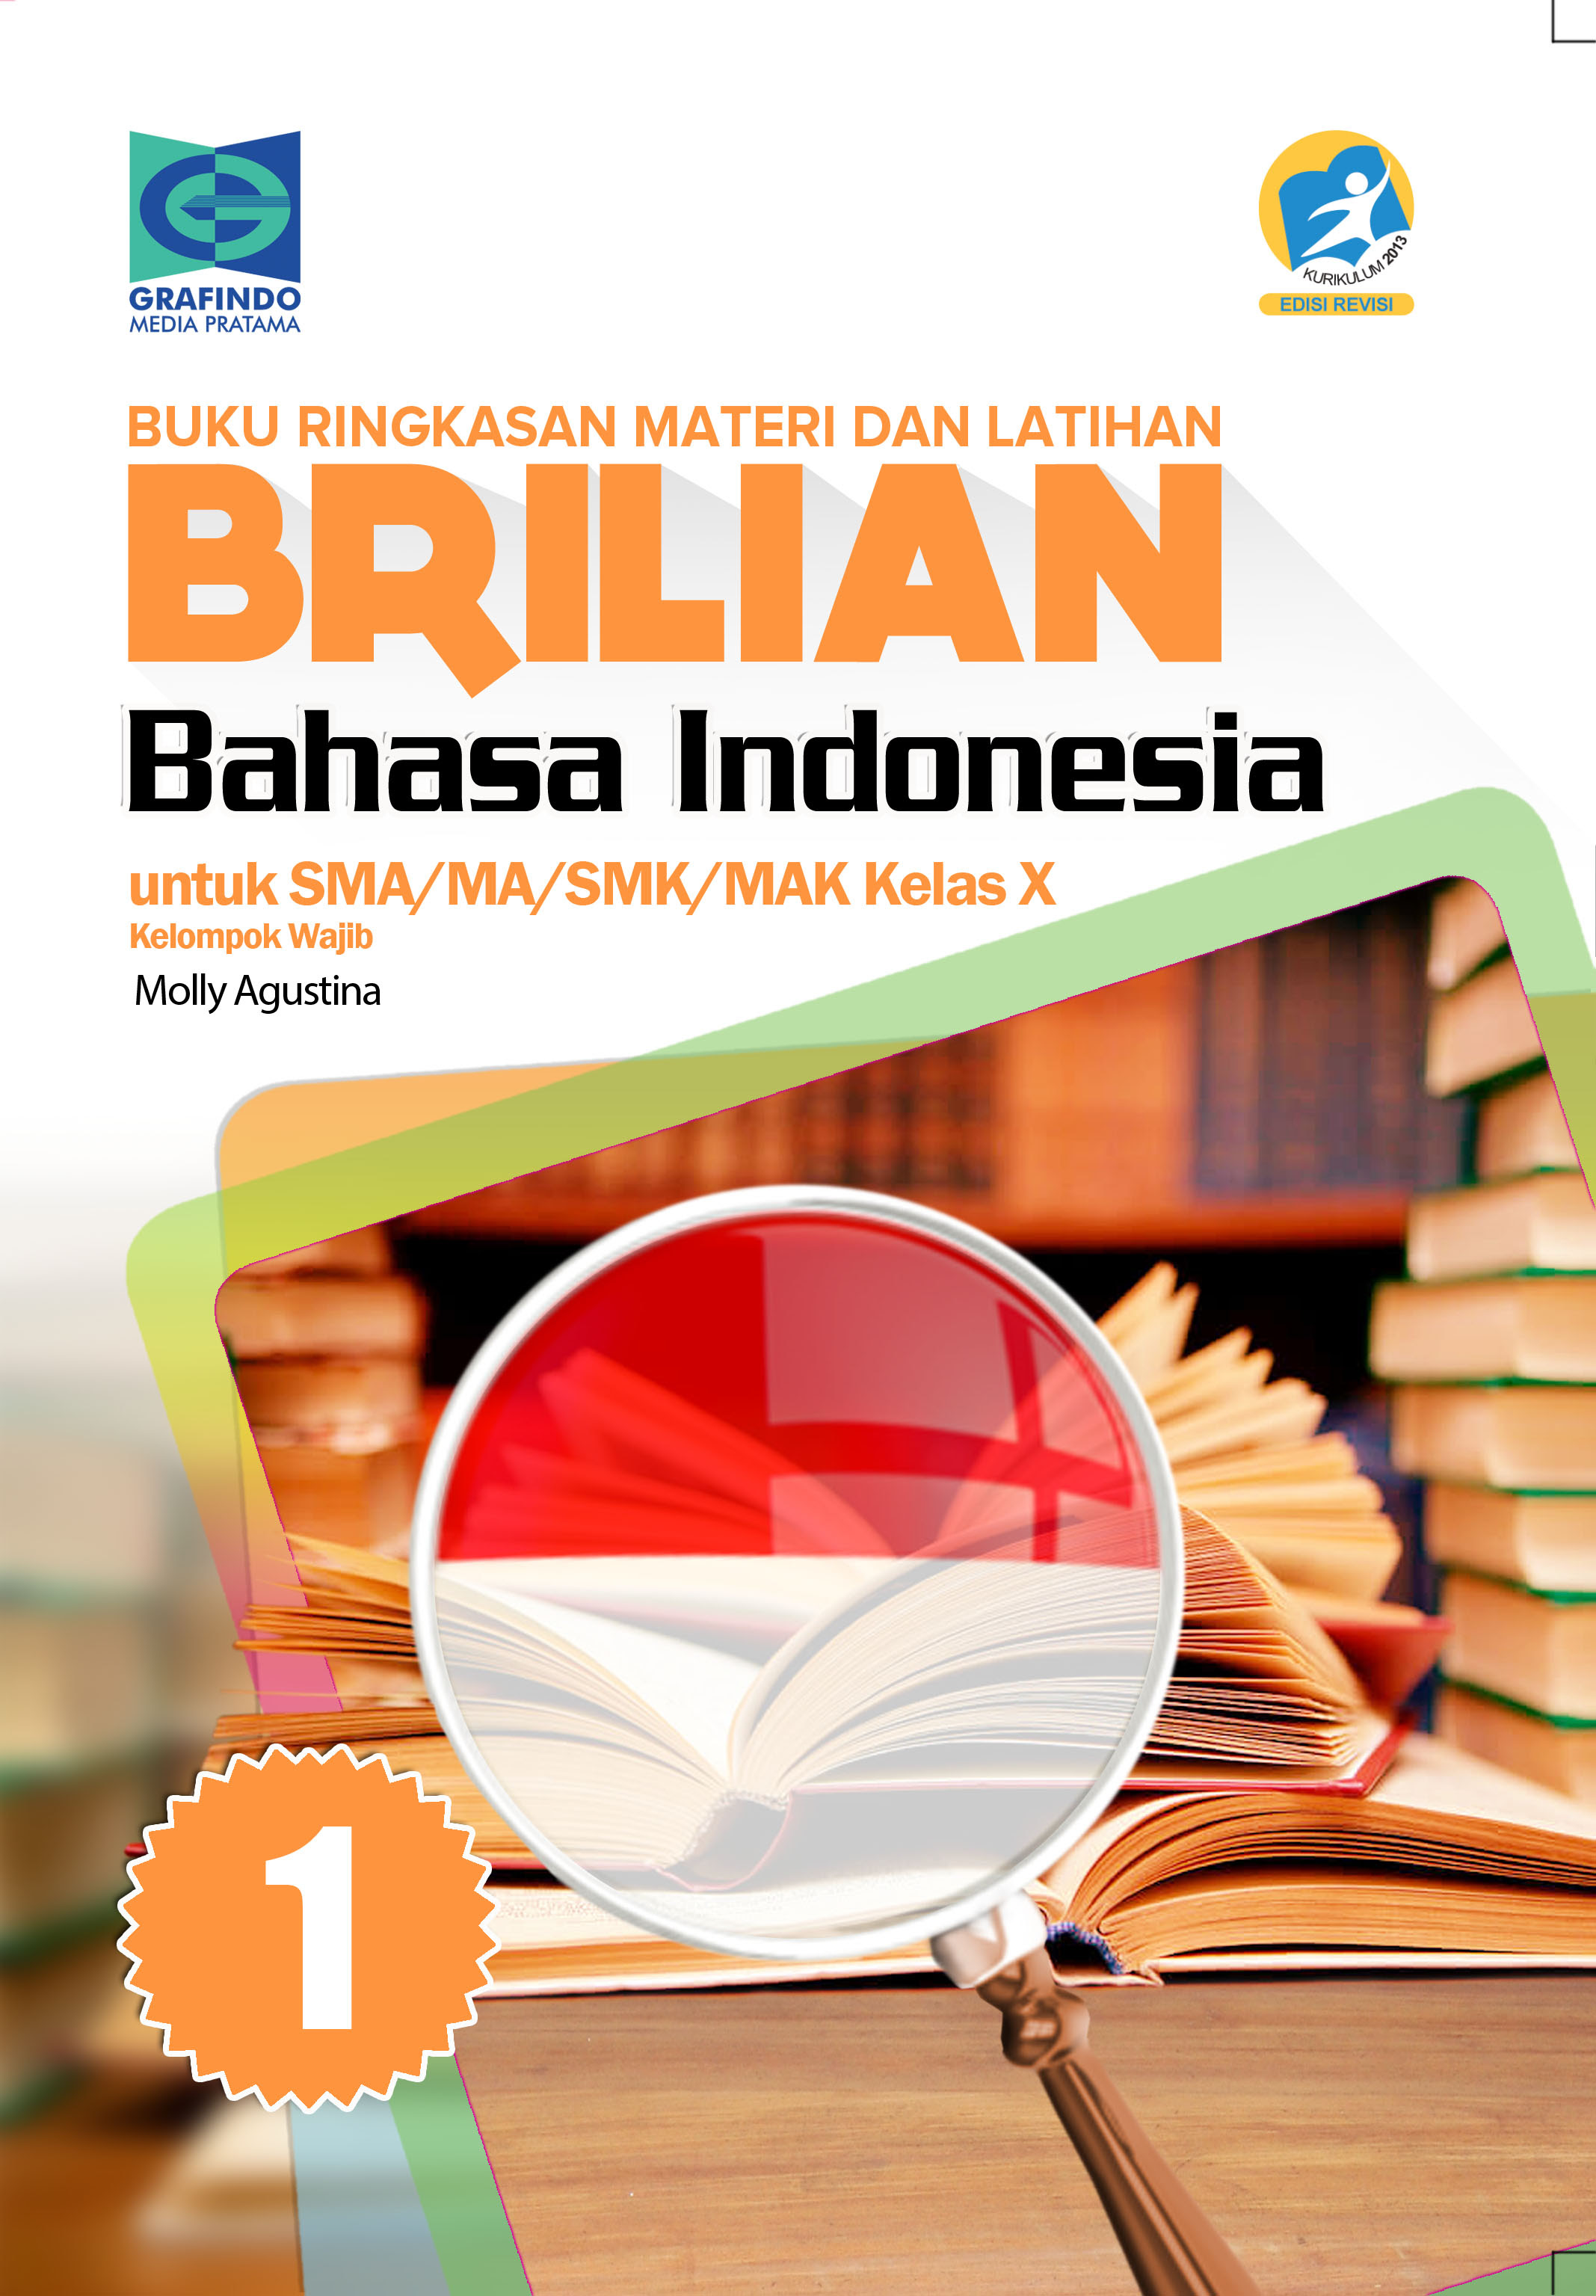 Kunci Jawaban Buku Brilian Bahasa Indonesia Kelas 10 - Tugas Agus